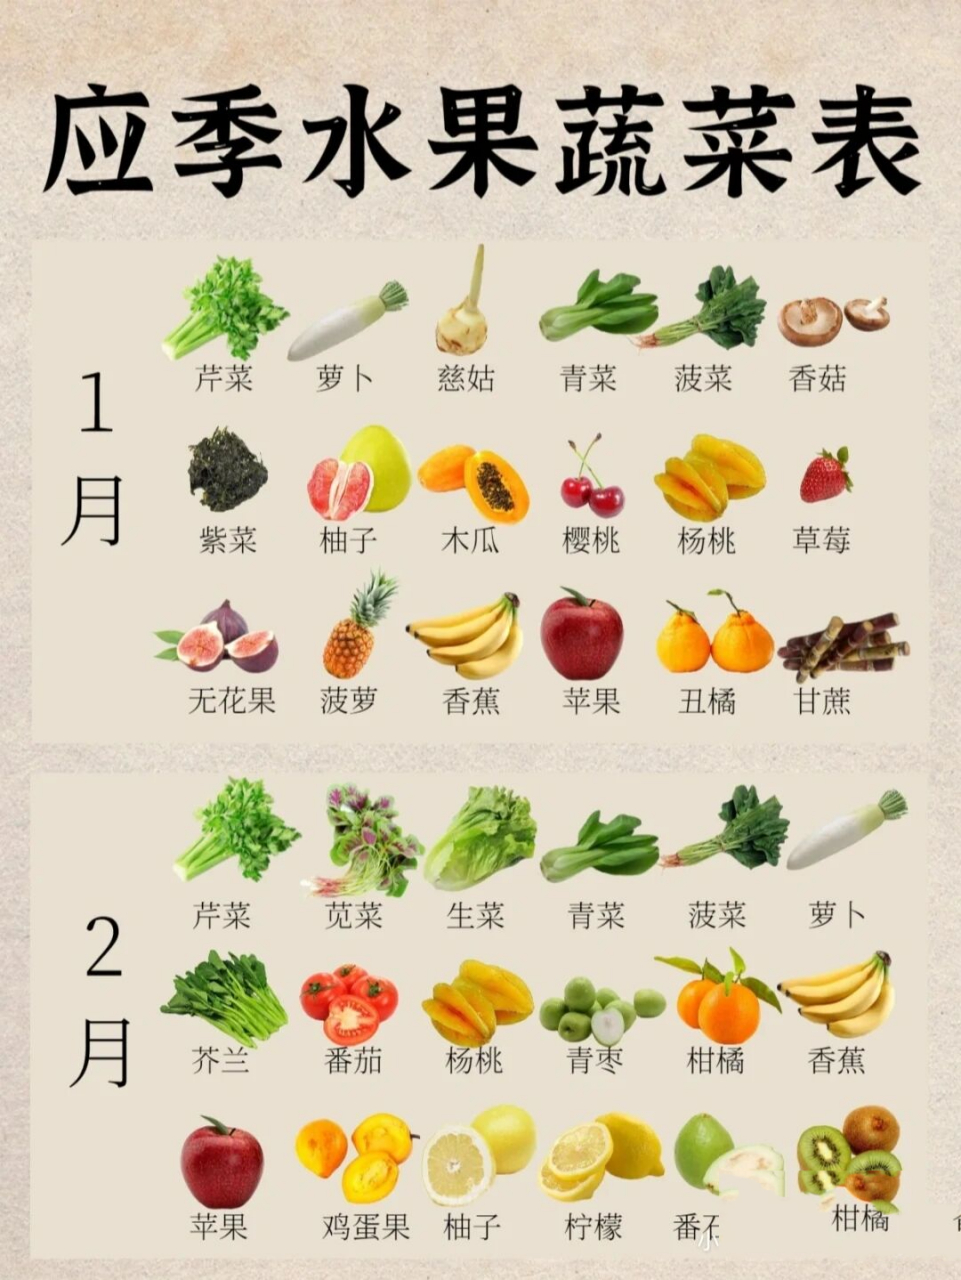 100种常见蔬菜名字图片